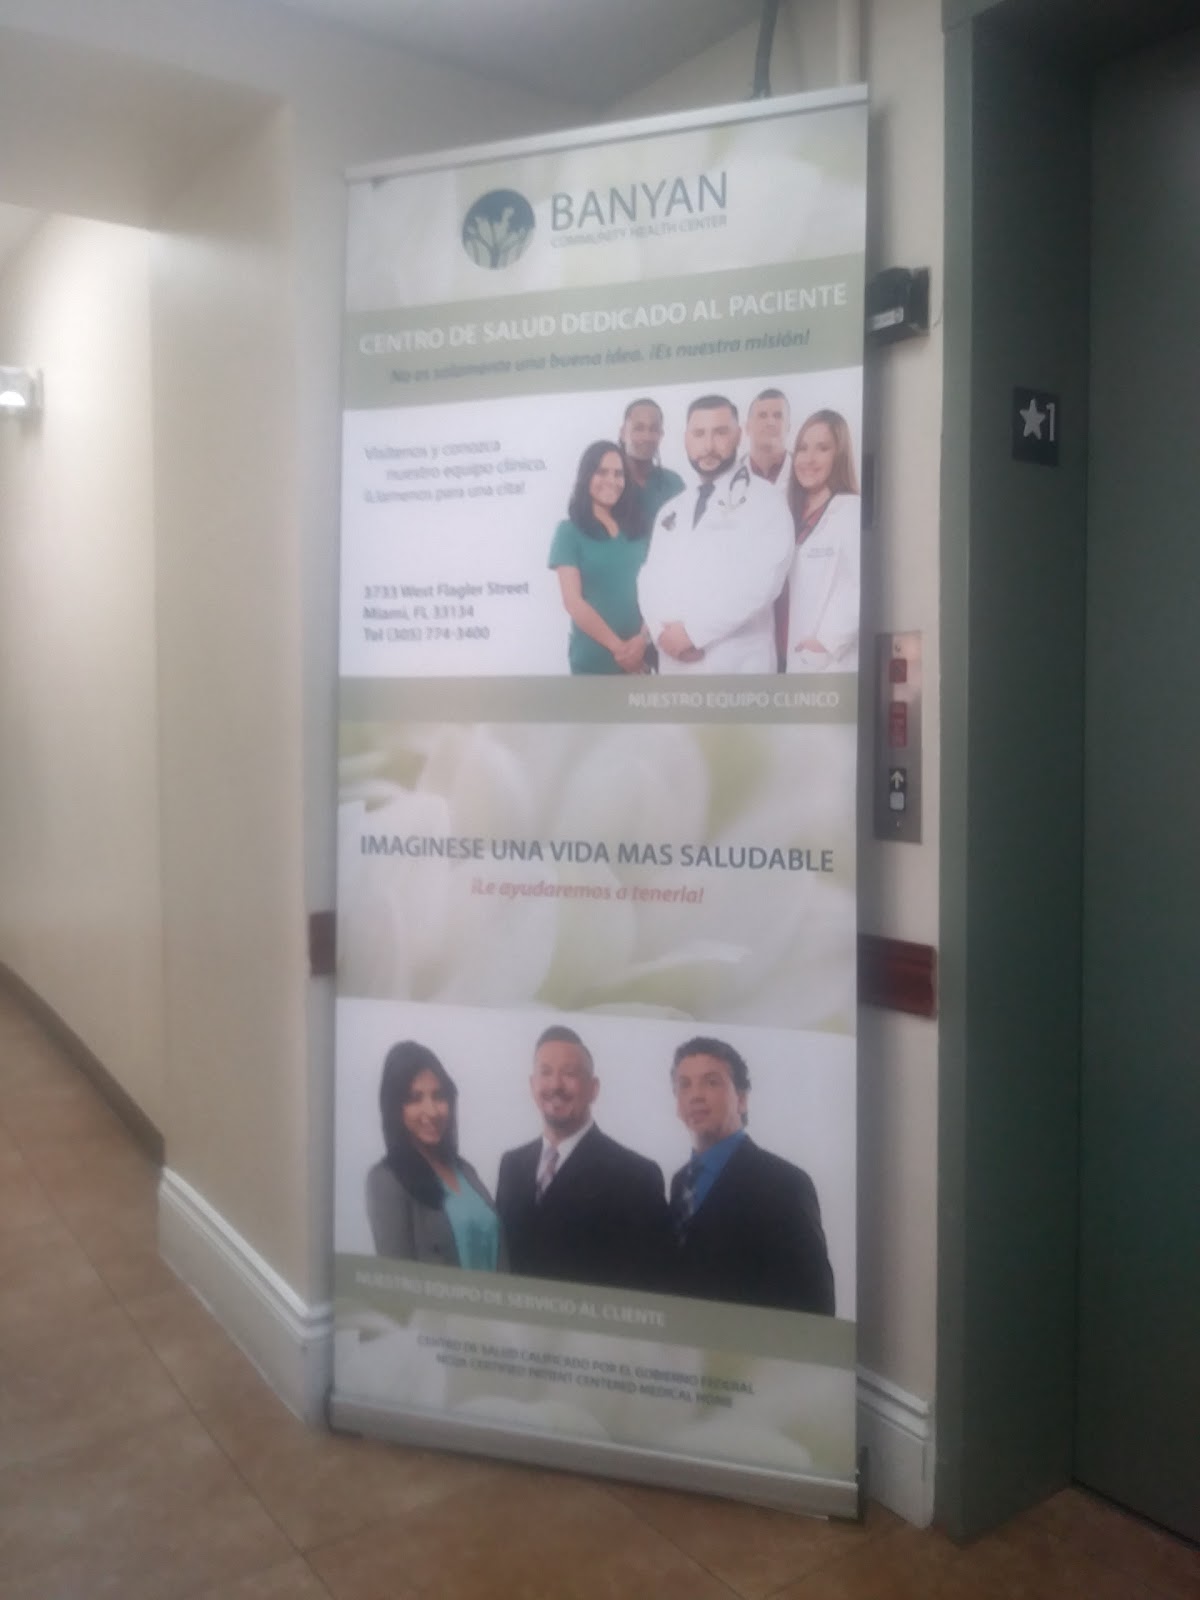 Miami Behavioral Health Center